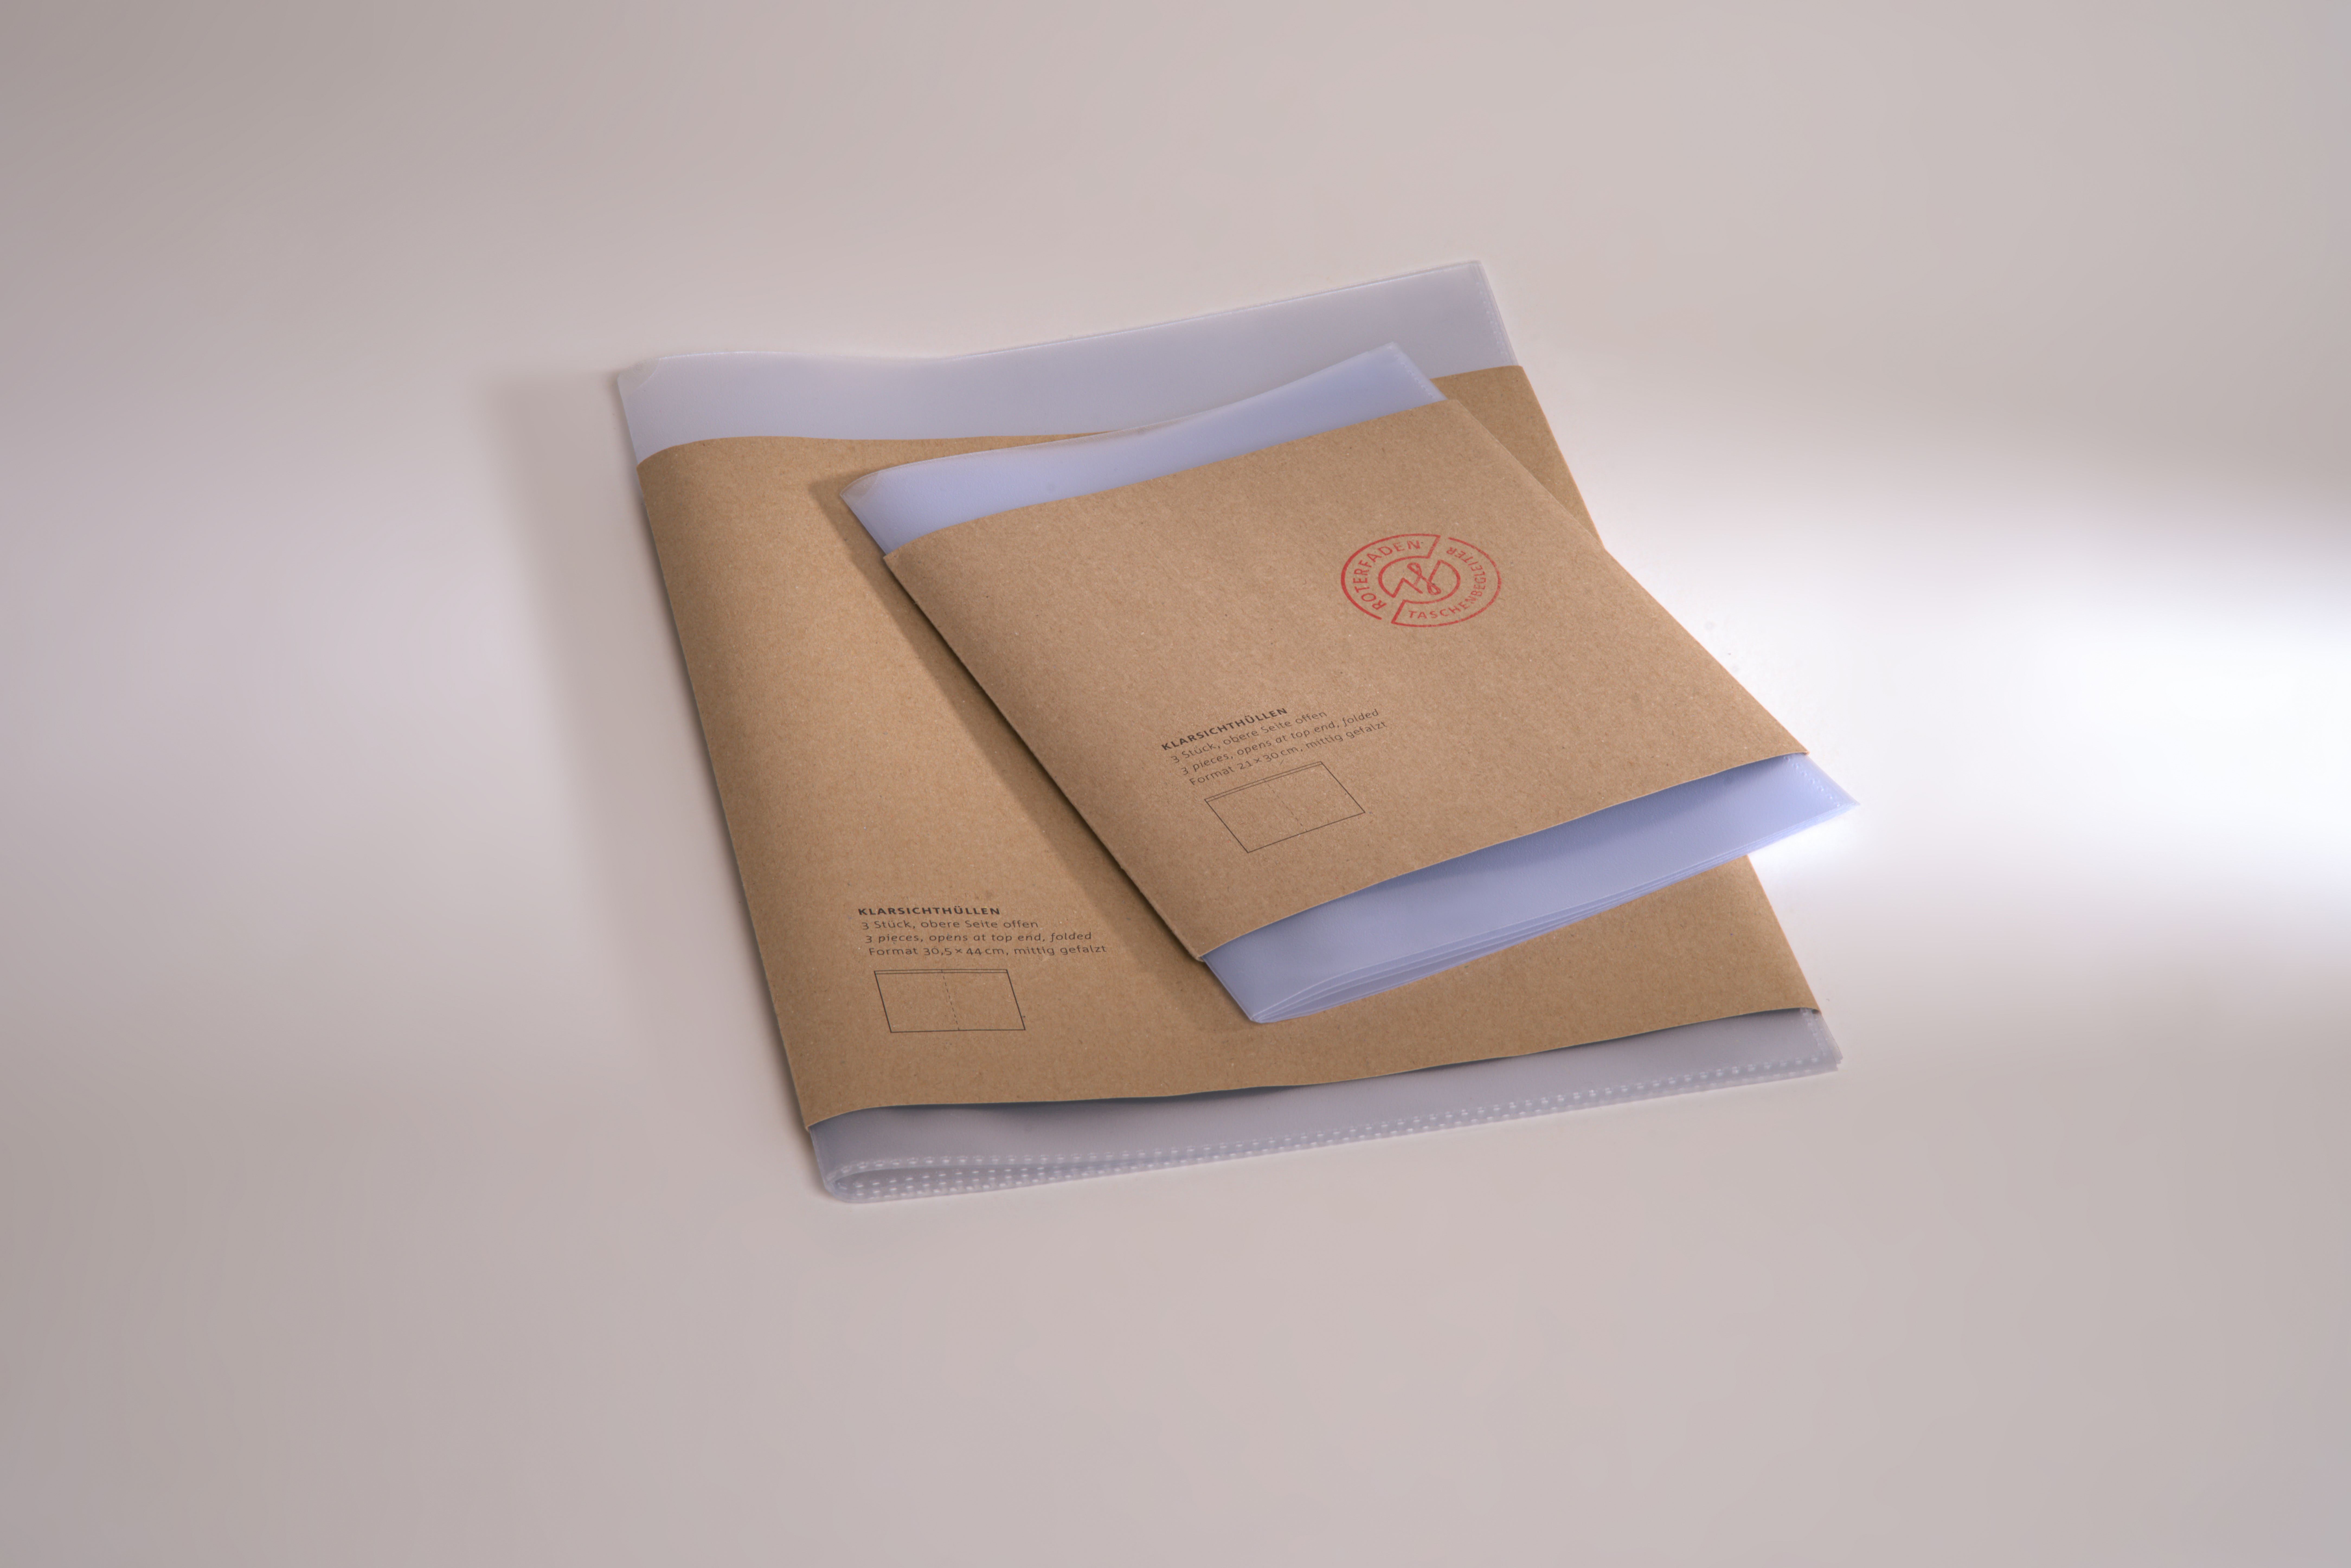 Stabile Klarsichthüllen aus umweltfreundlichem Polypropylen: Perfekt zum Schutz von Papieren und Fotos. In A5 und A4 erhältlich.